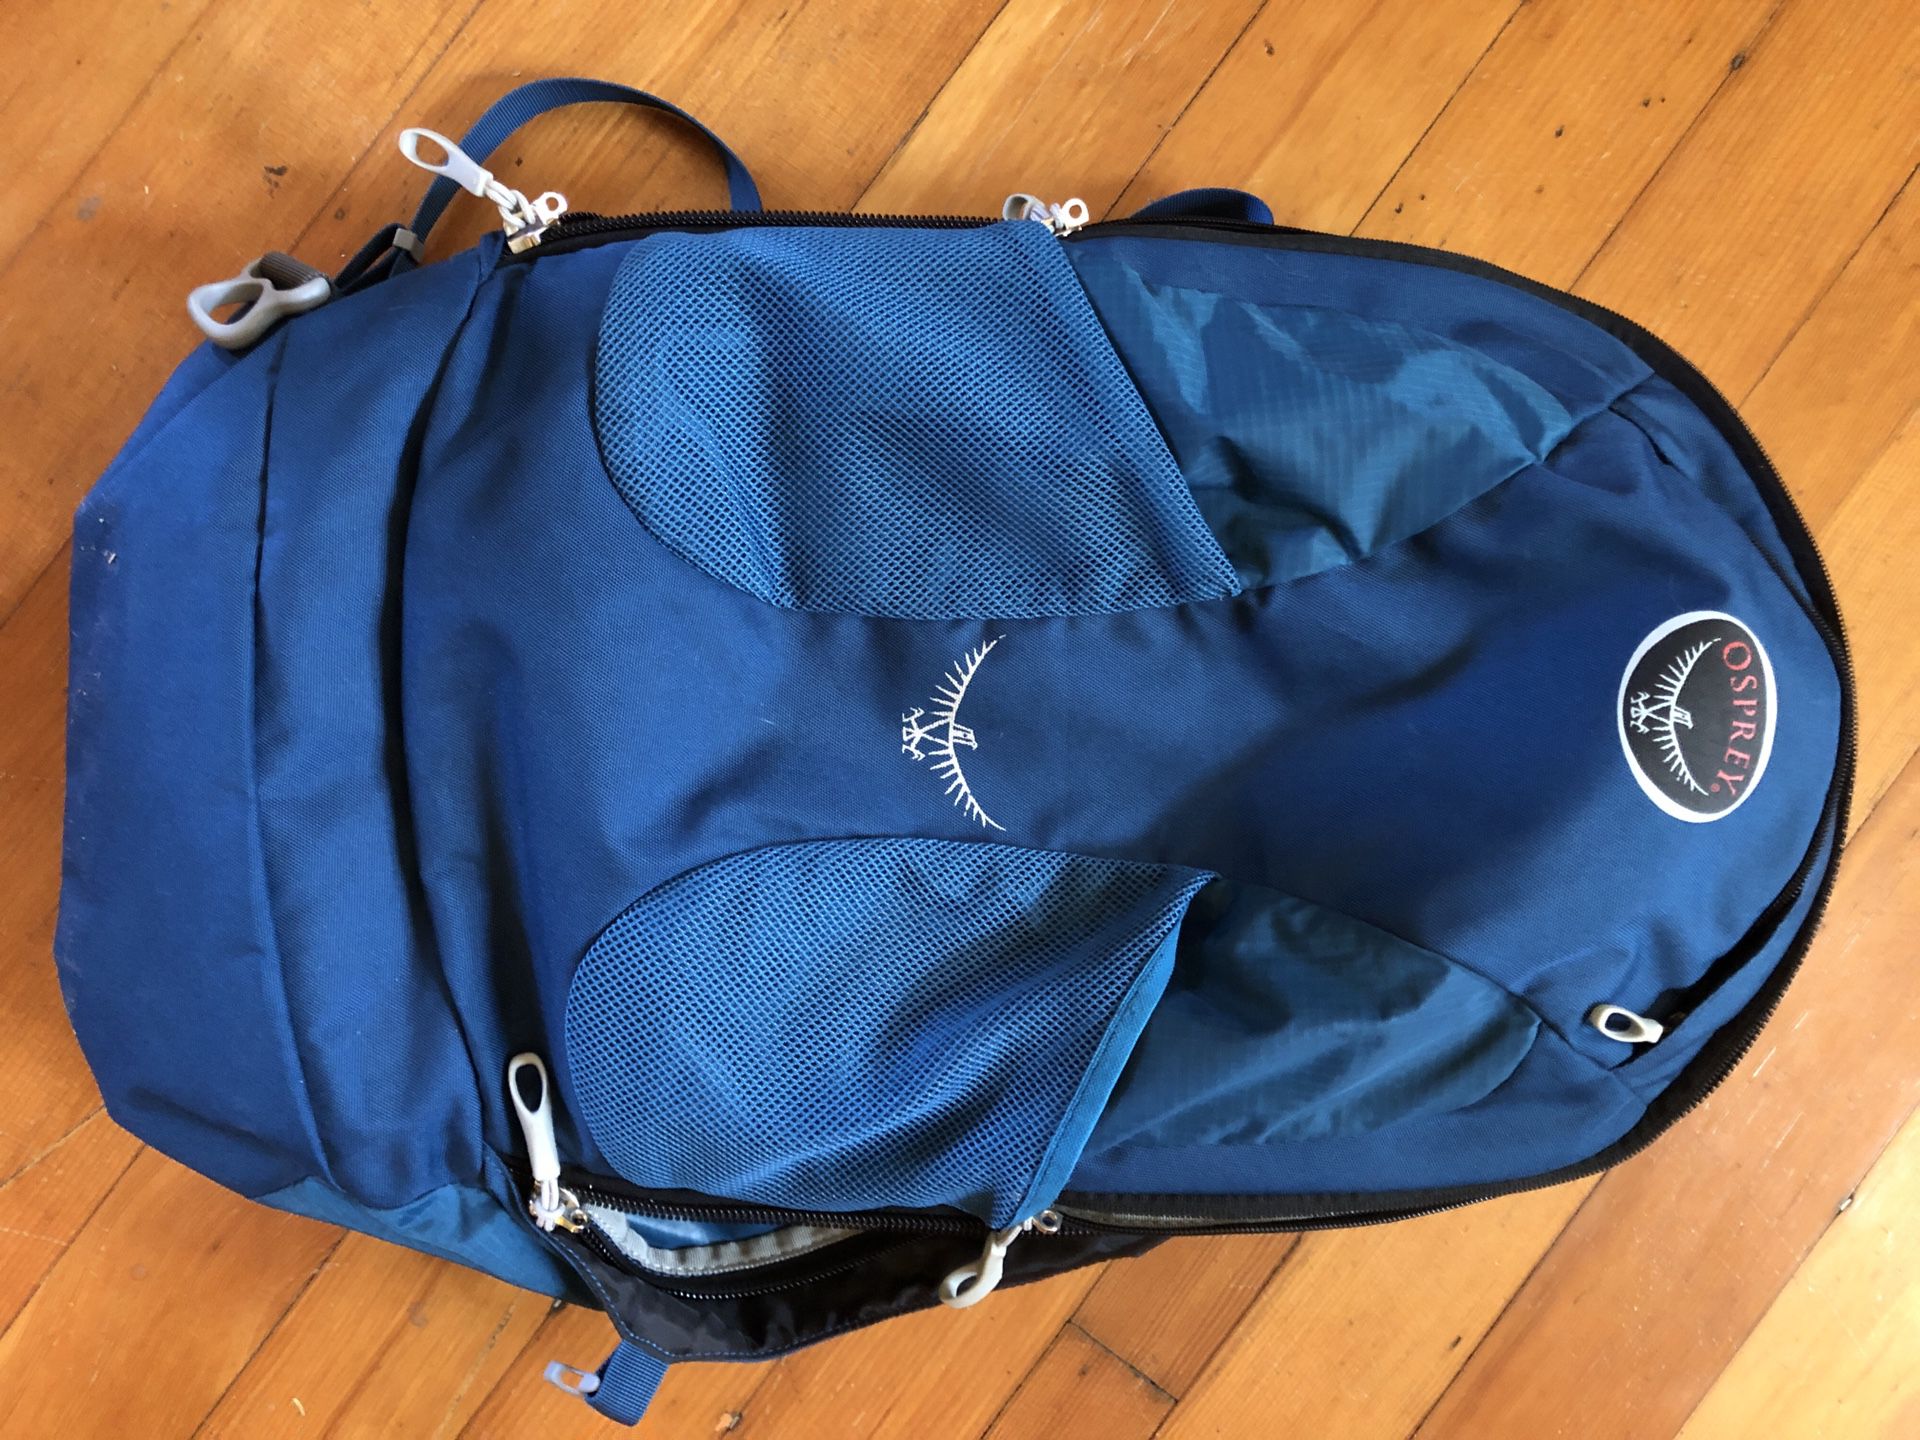 Osprey travel backpack. 40L